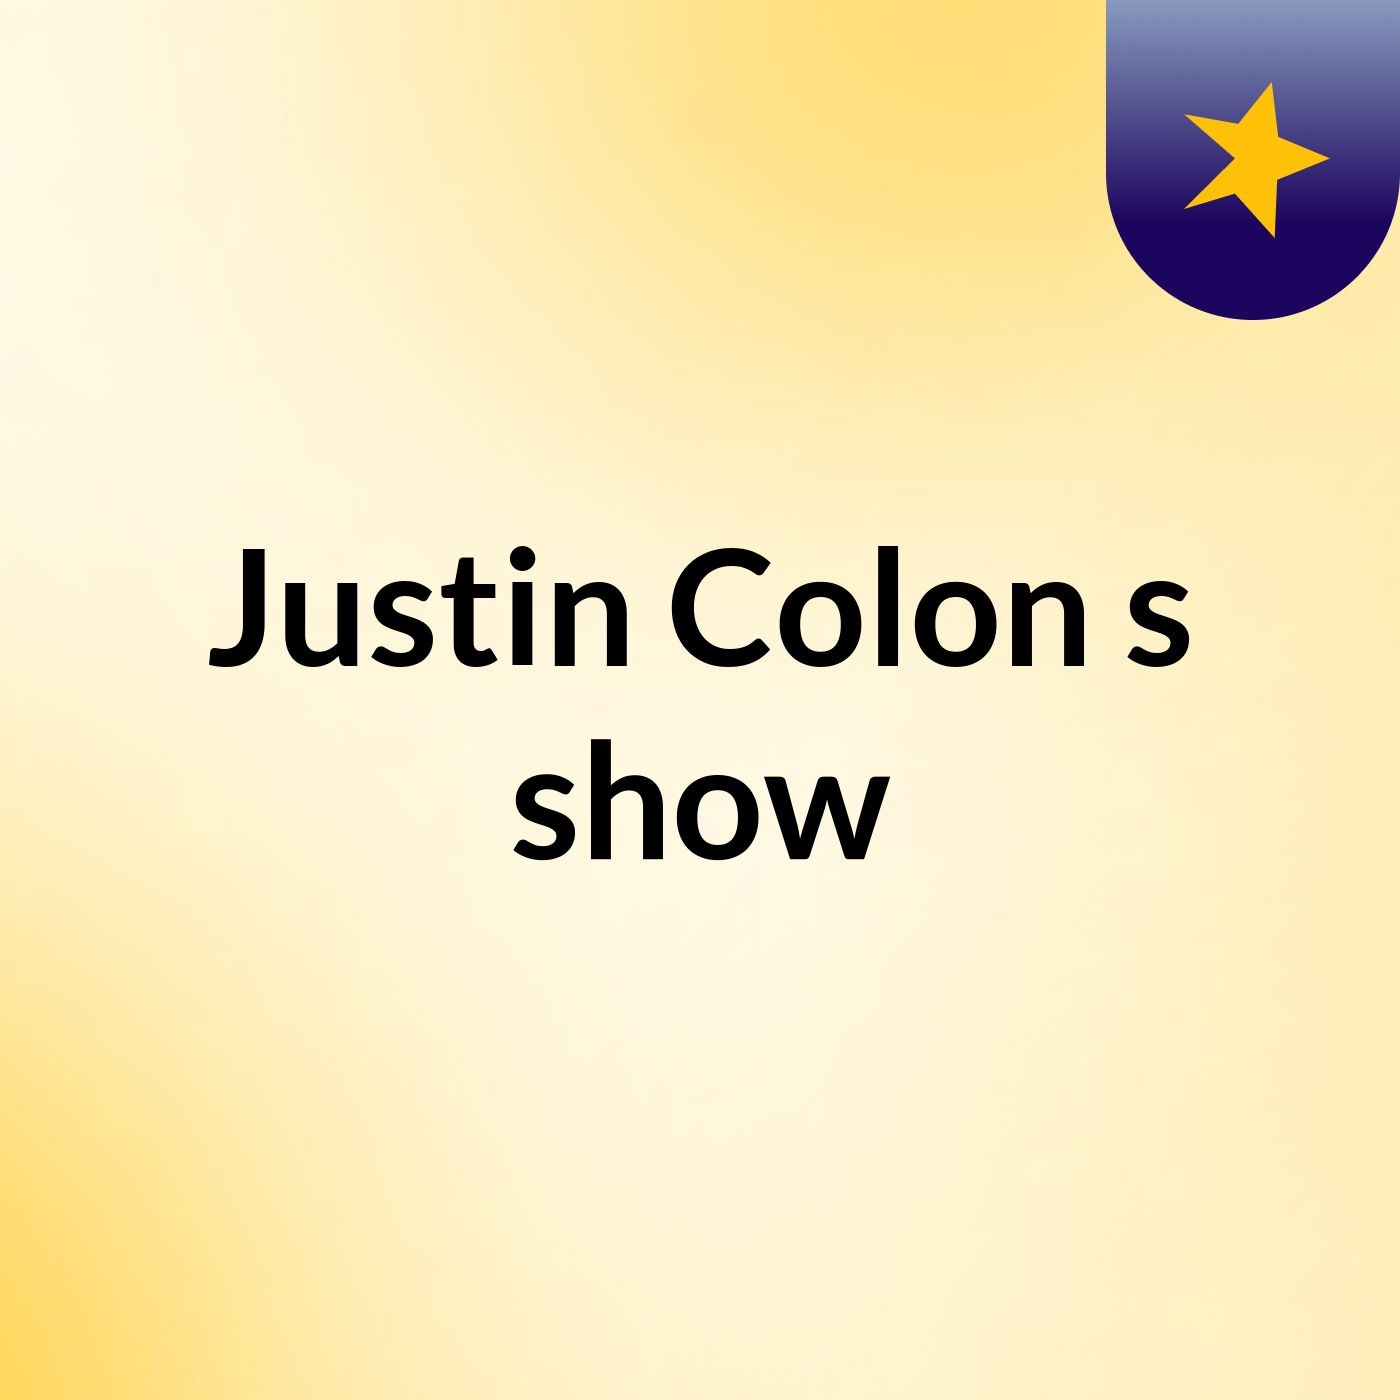 Justin Colon's show